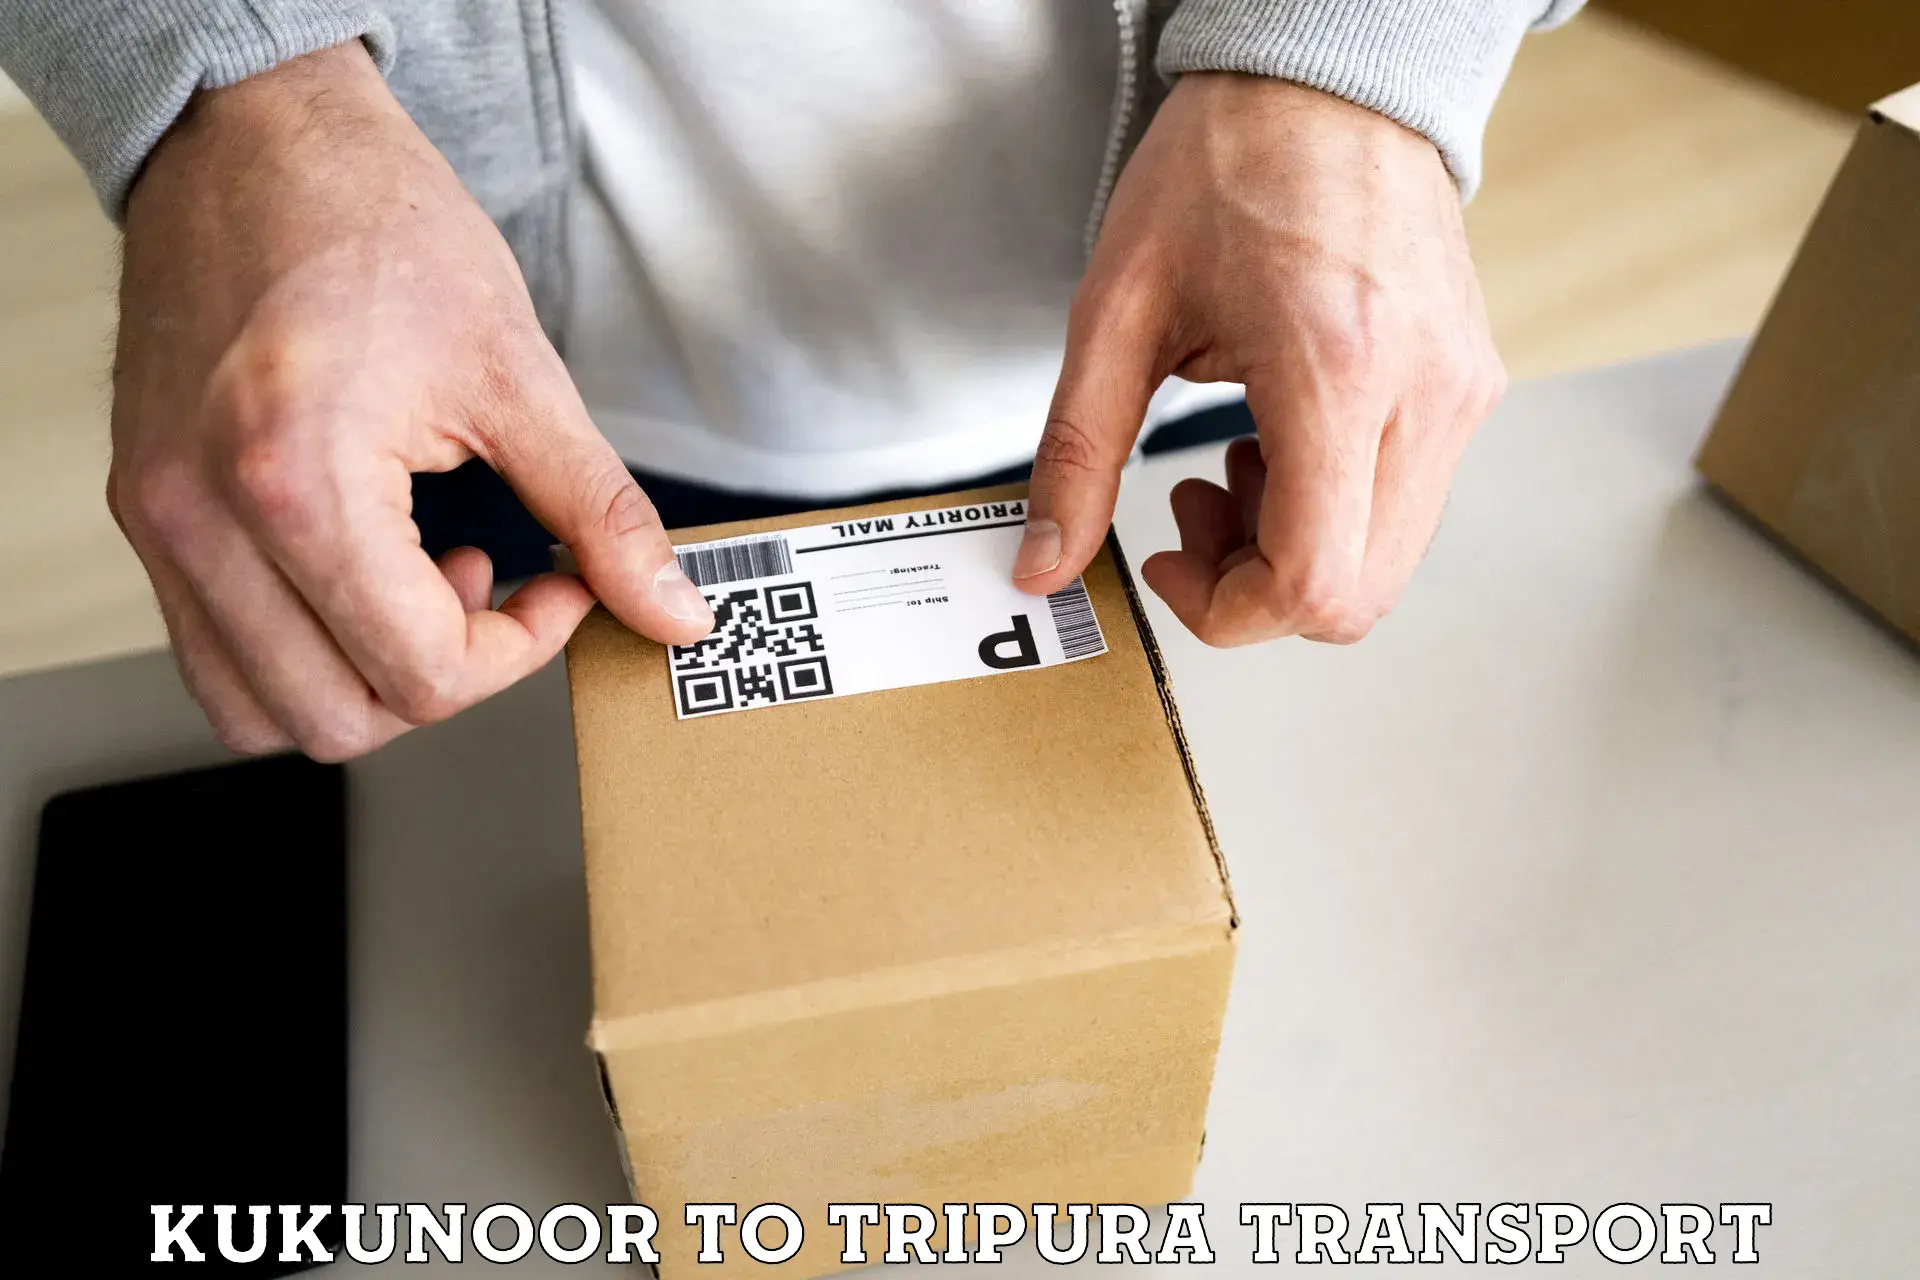 Two wheeler parcel service Kukunoor to IIIT Agartala